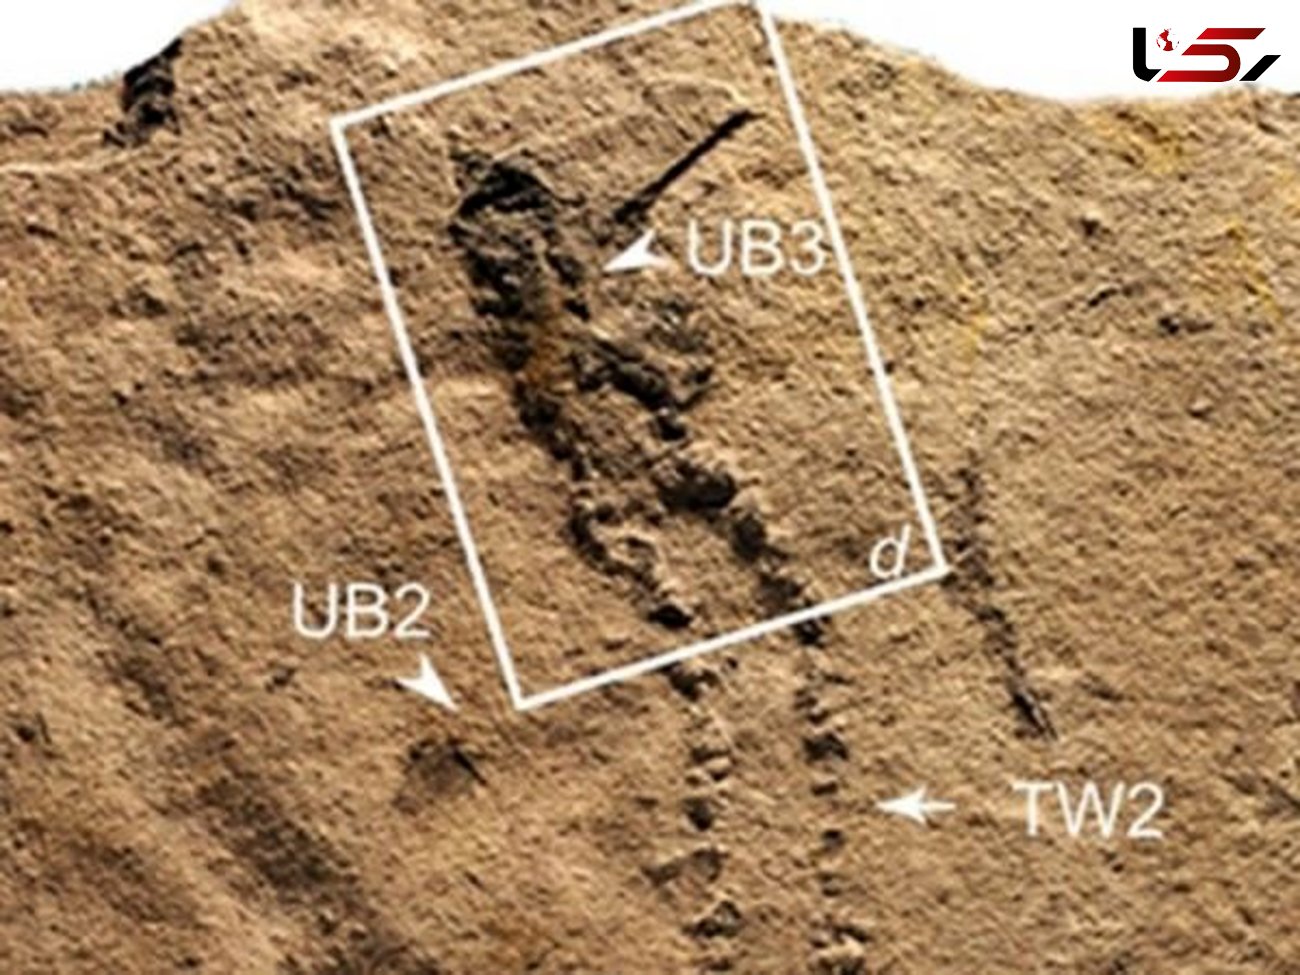 ردپای قدیمی ترین حیوان در چین کشف شد/فسیلی با قدمت 551 میلیون سال قبل